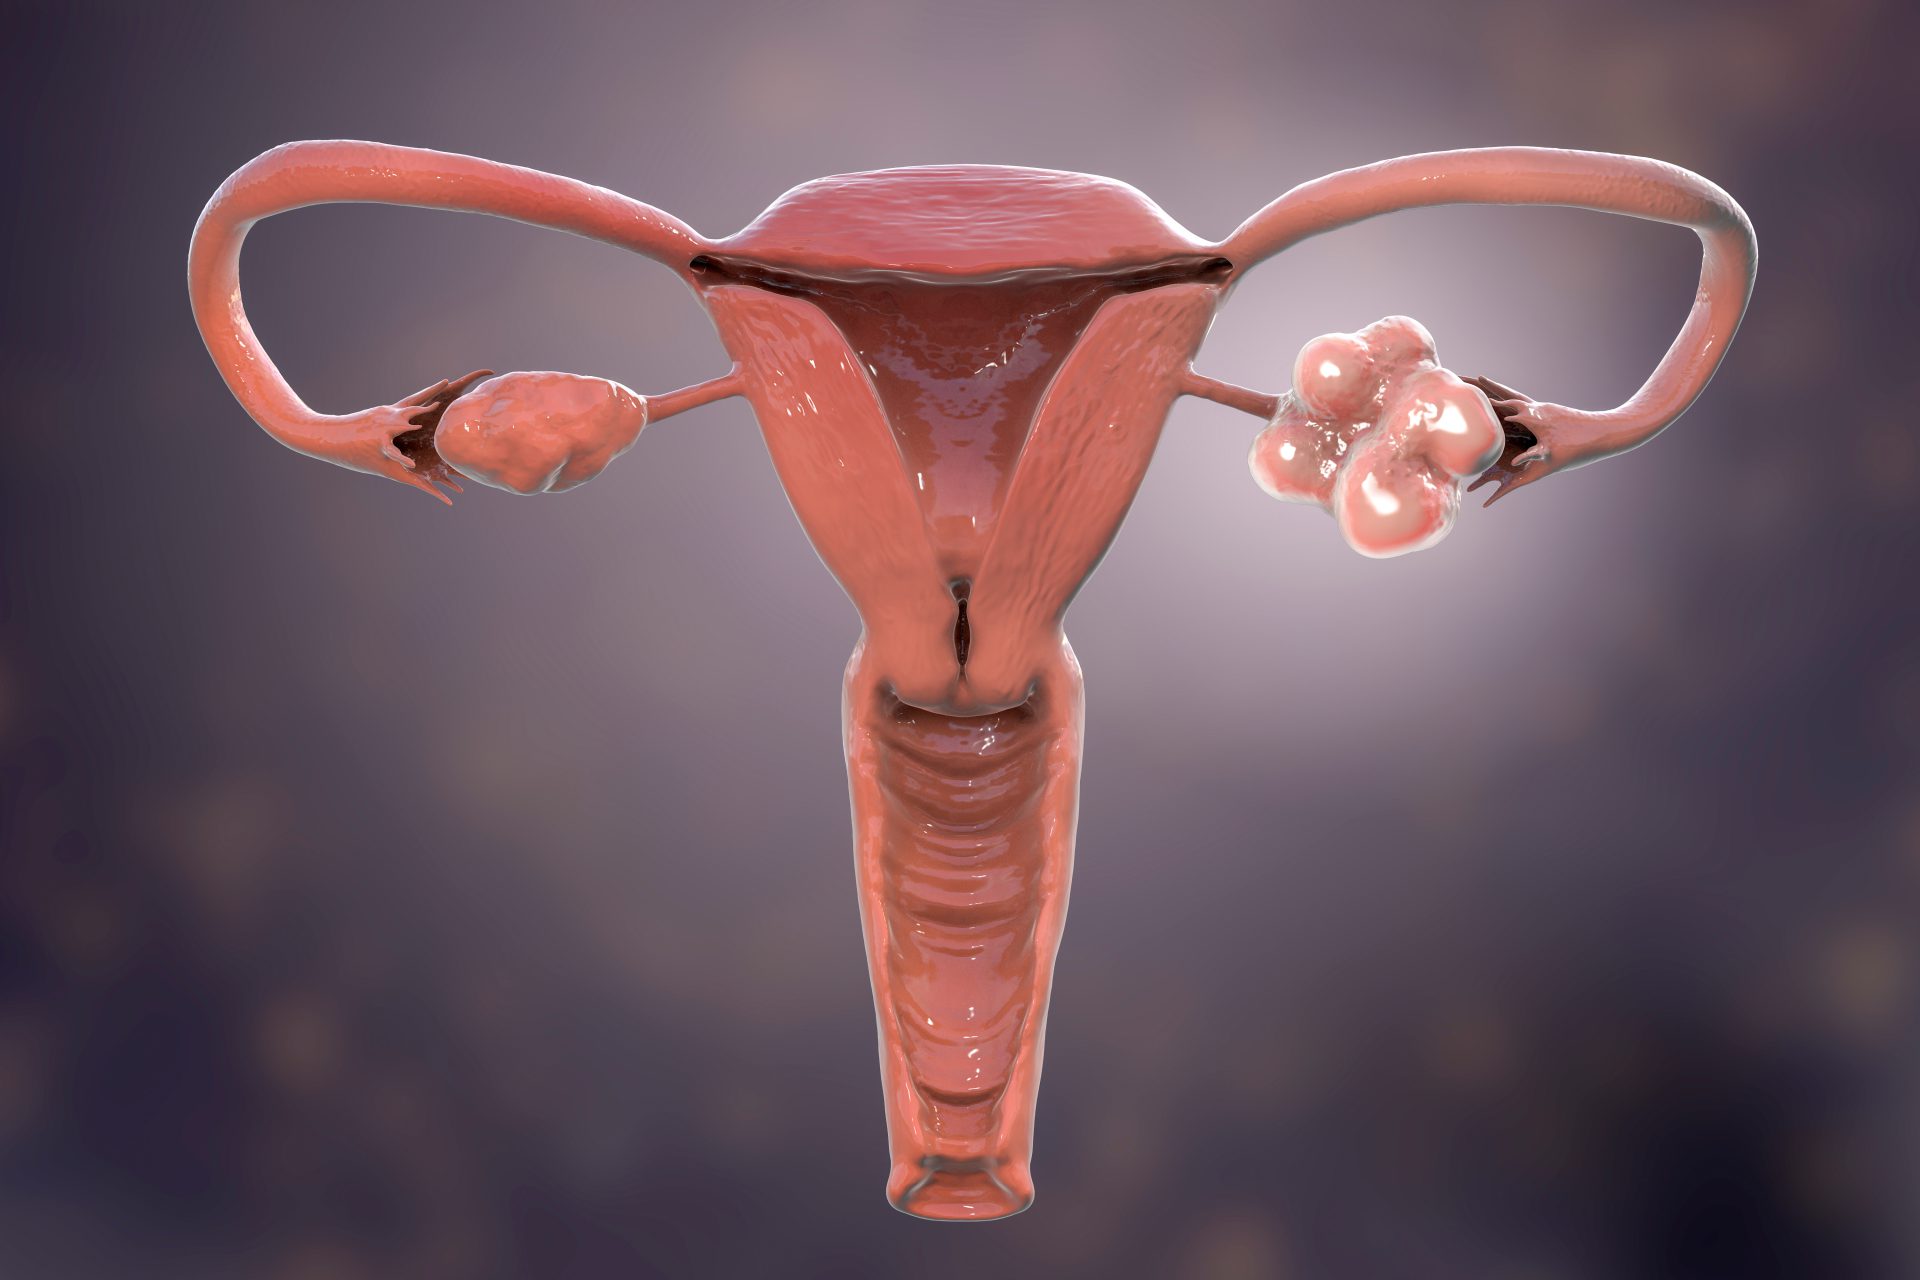 Obraz 3D - zespół policystycznych jajników (PCOS), a problemy z zajściem w ciąże